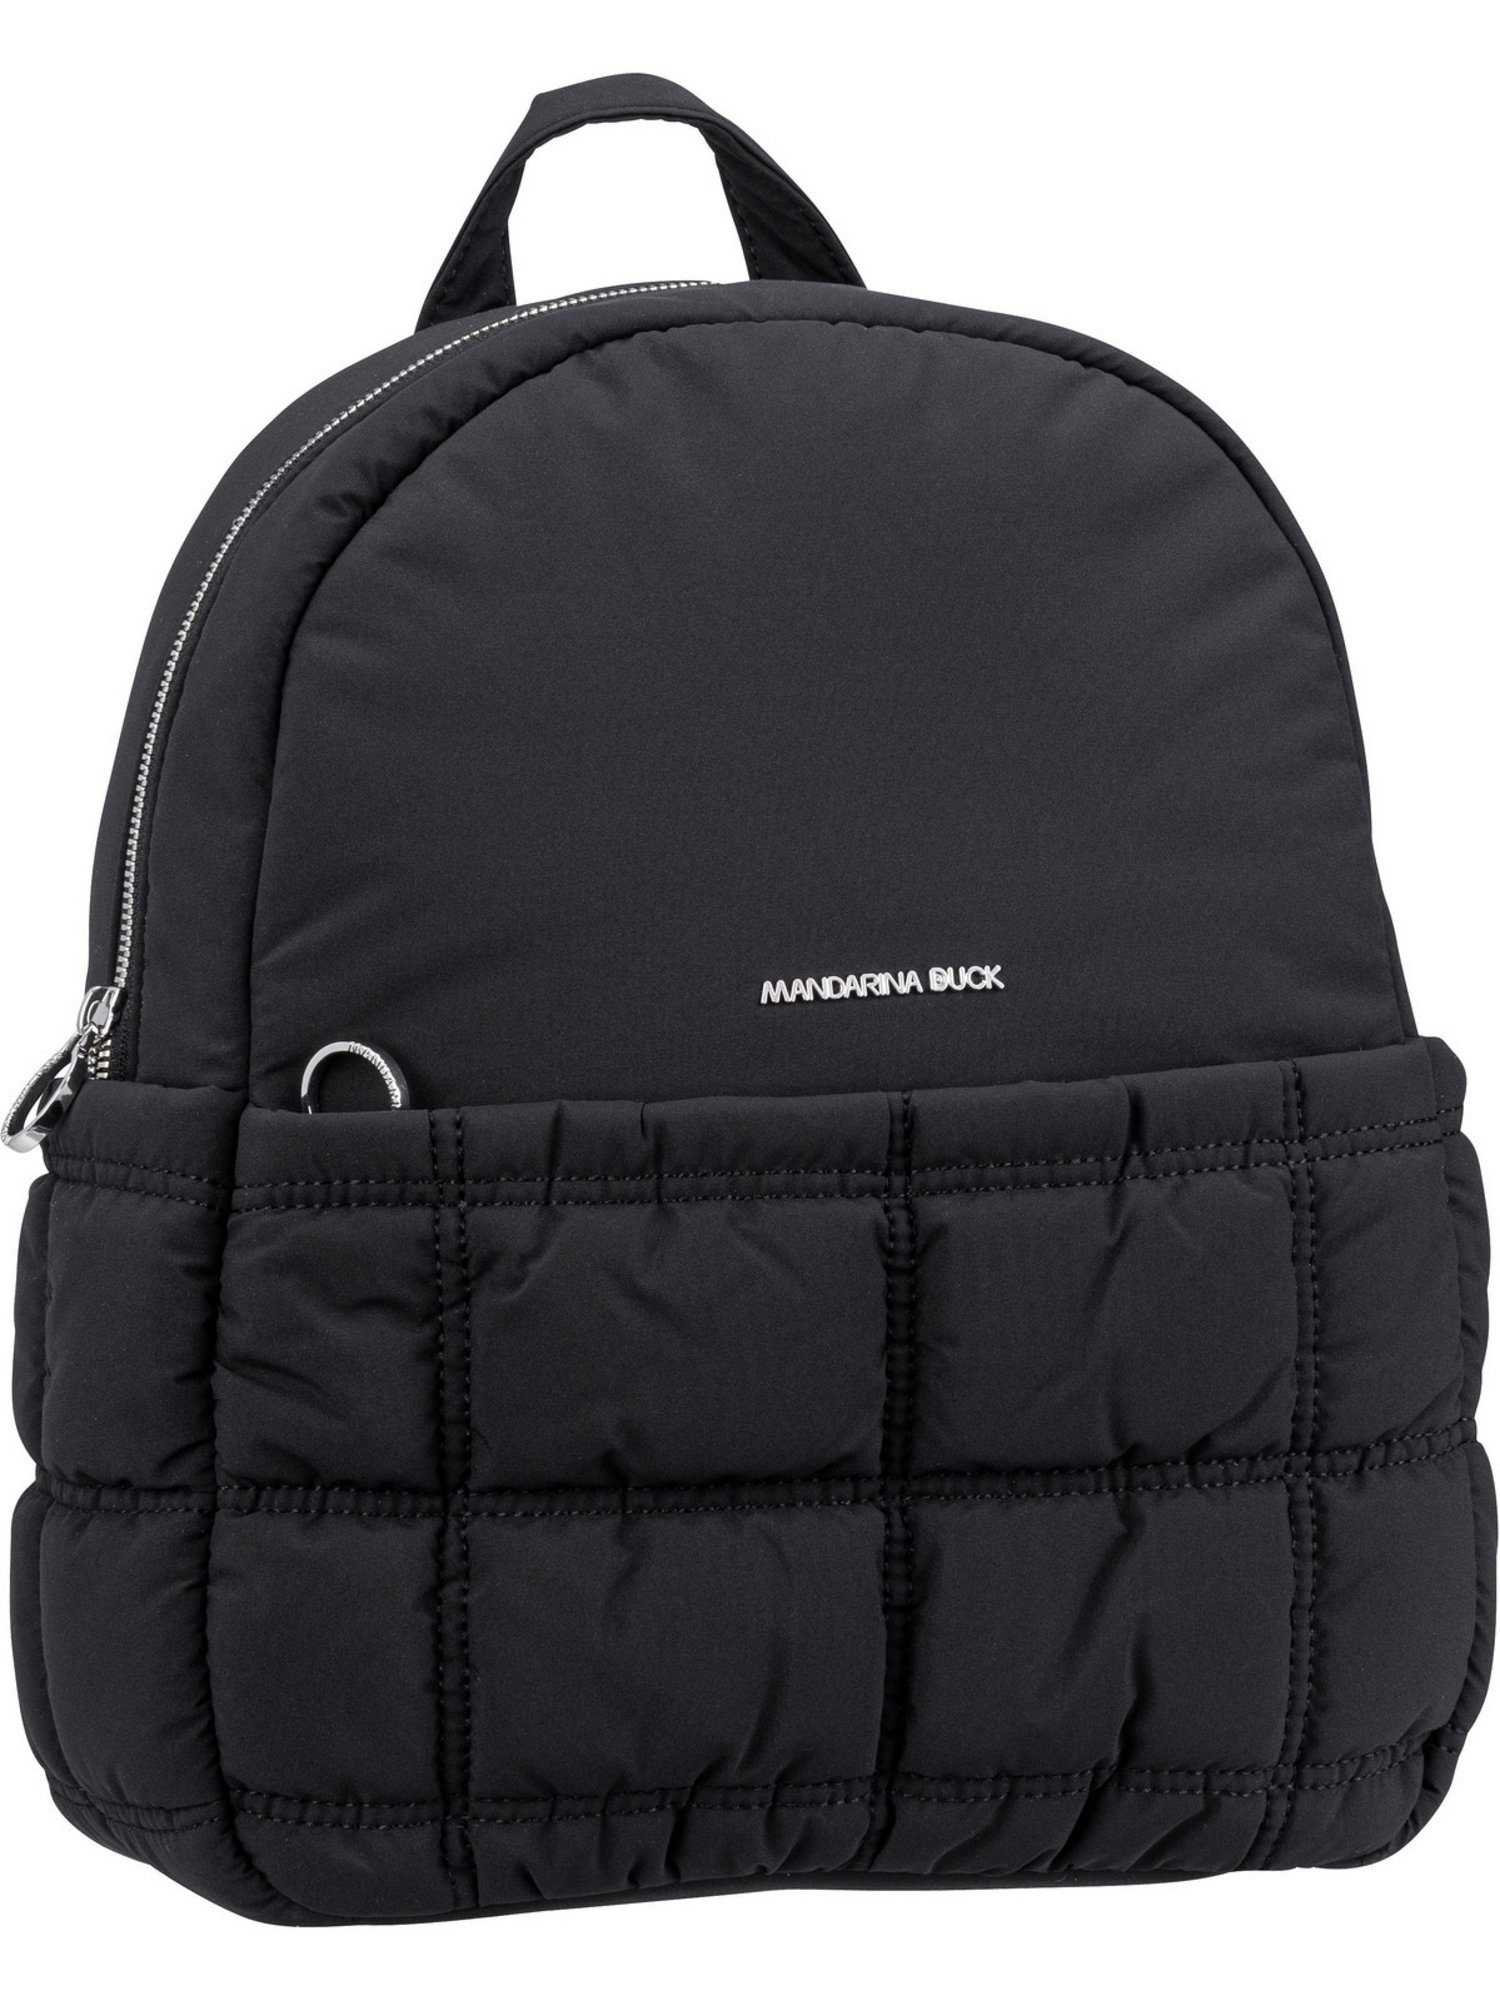 Black Rucksack ODT07 Dream Duck Mandarina Pillow Backpack